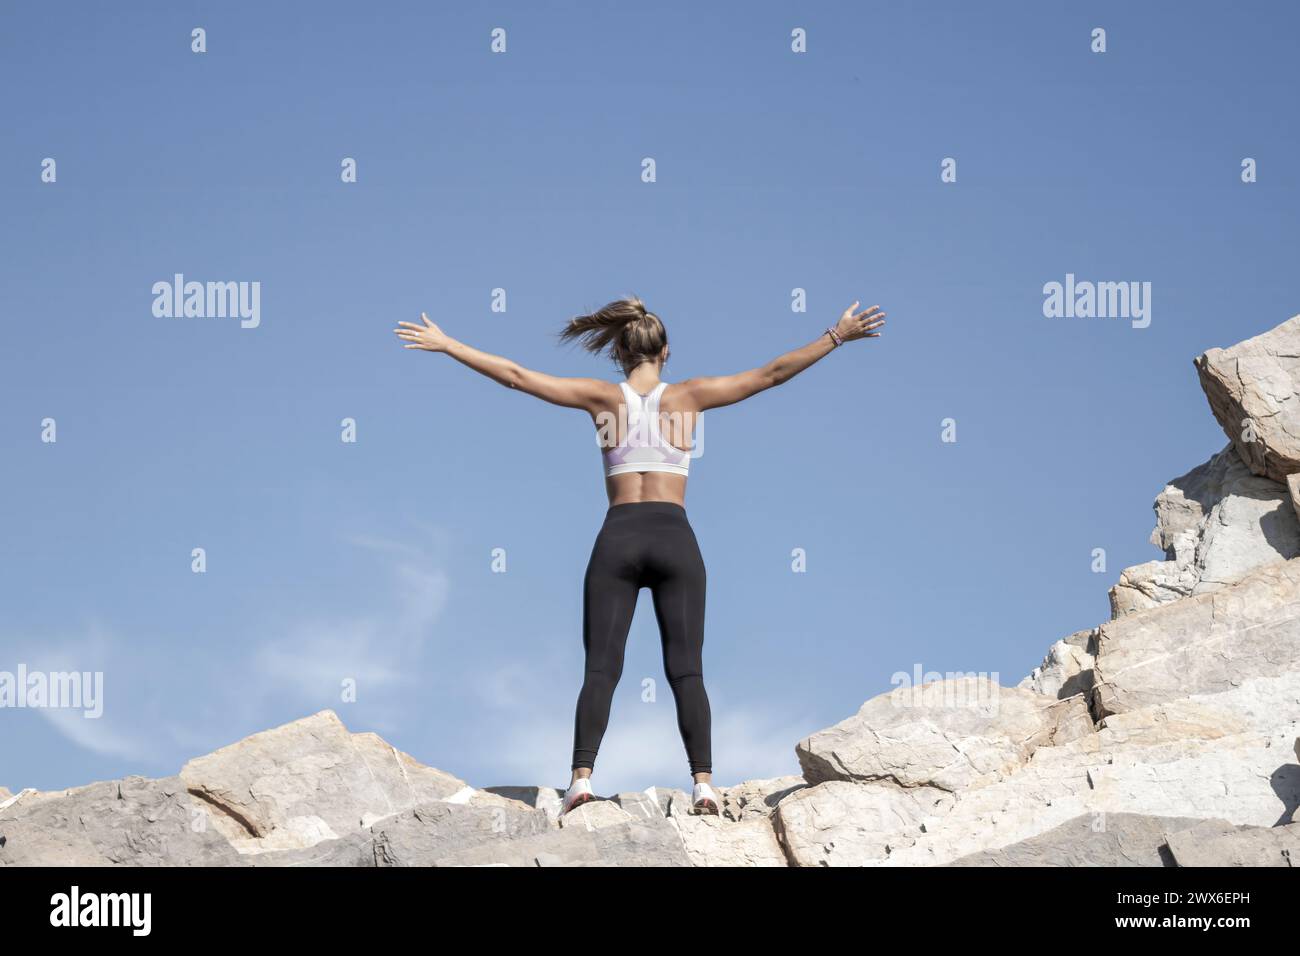 Eine Person steht triumphierend auf felsigem Gelände, mit ausgestreckten Armen, unter einem klaren blauen Himmel, und verkörpert Freiheit und Leistung Stockfoto